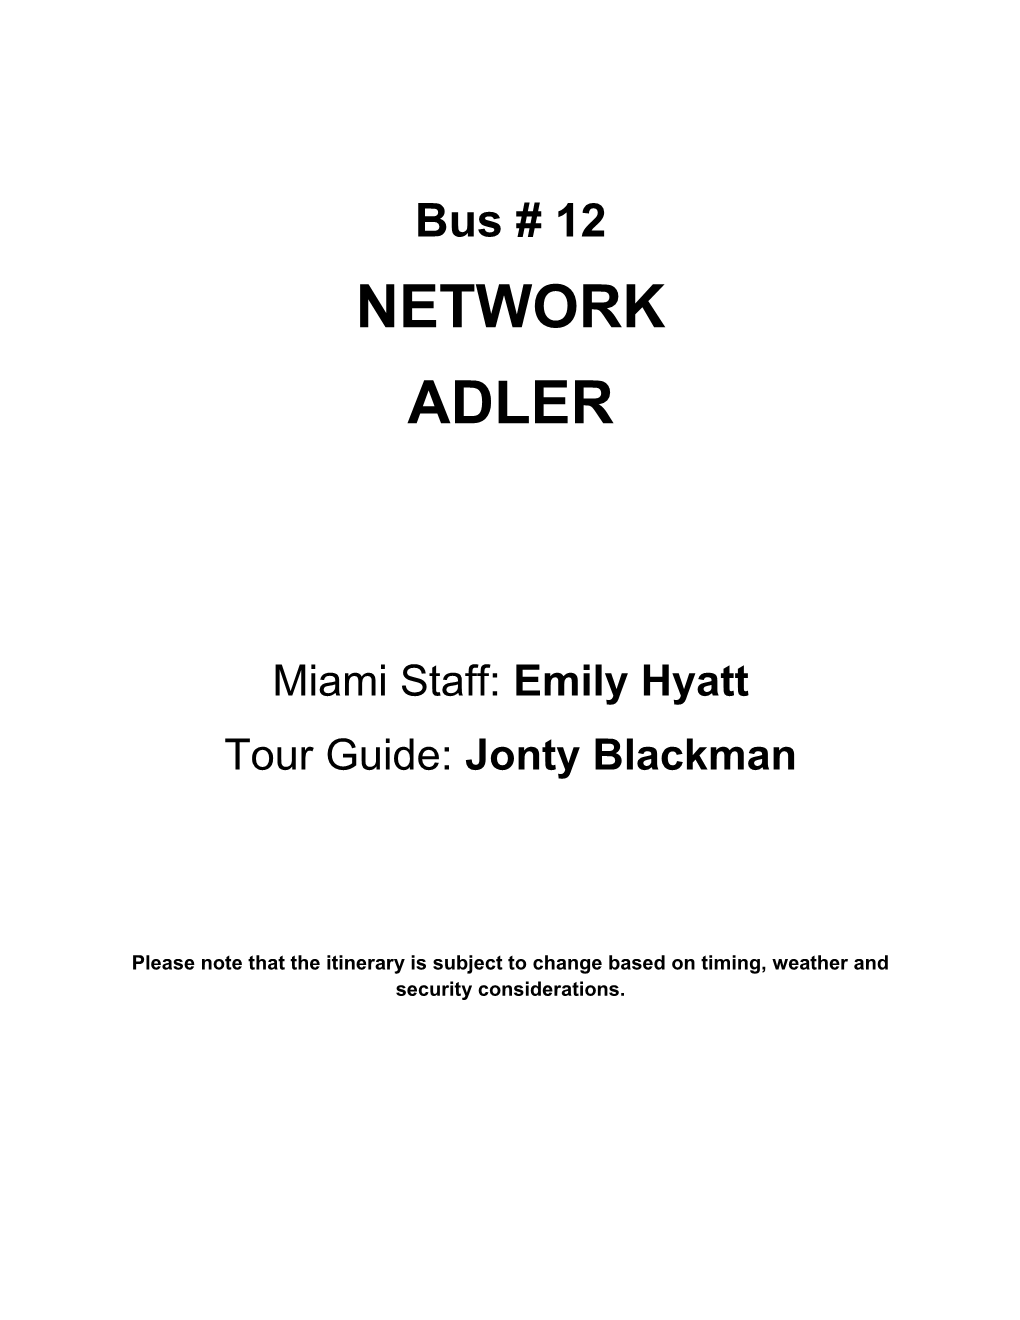 Miami Staff: Emily Hyatt